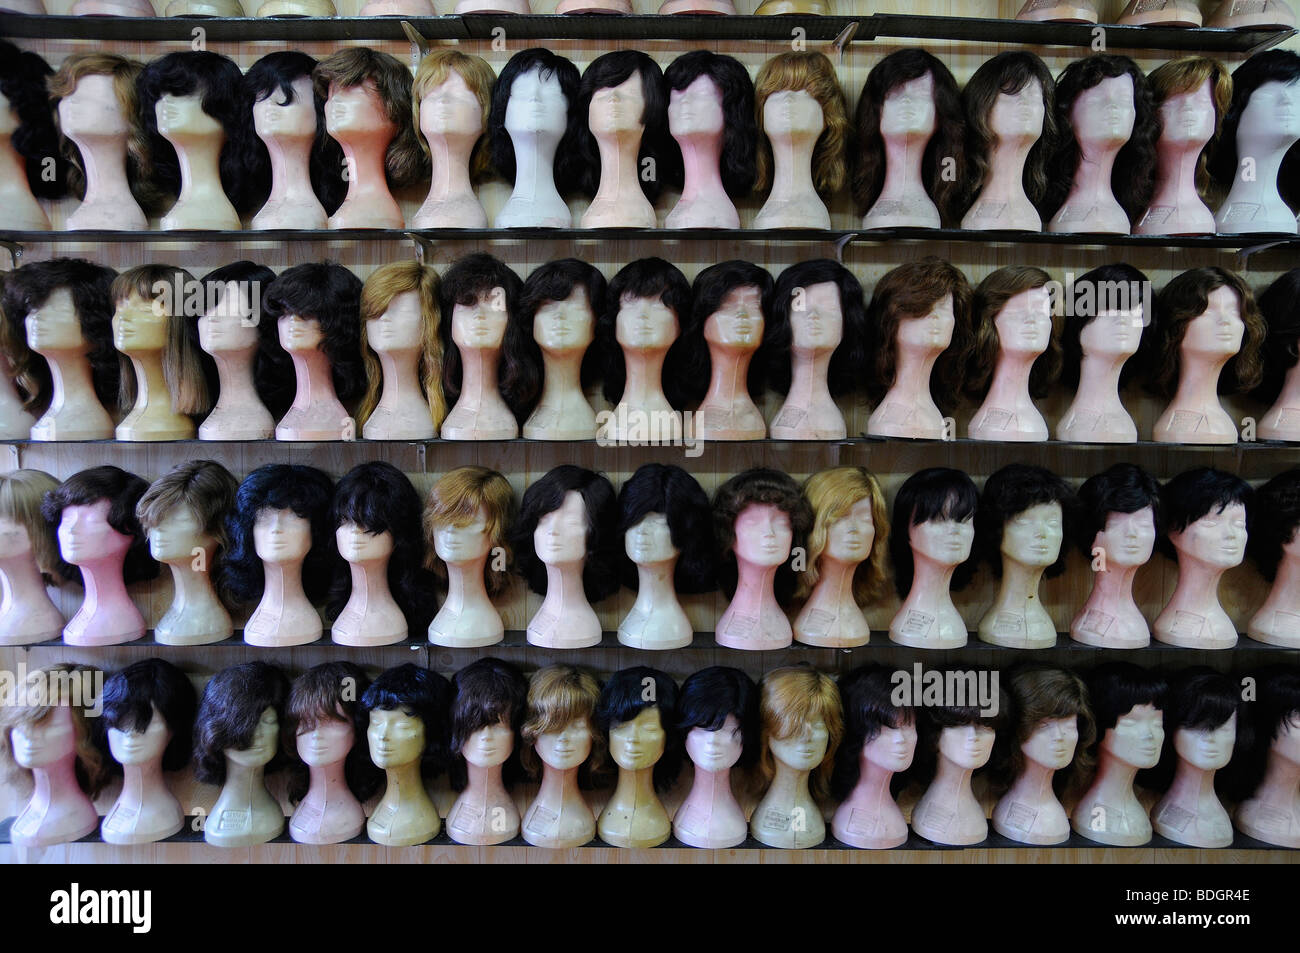 En Turquía está prohibido usar el velo en las universidades, por lo tanto algunas alumnas pelucas de desgaste en la parte superior de sus velos. Foto de stock